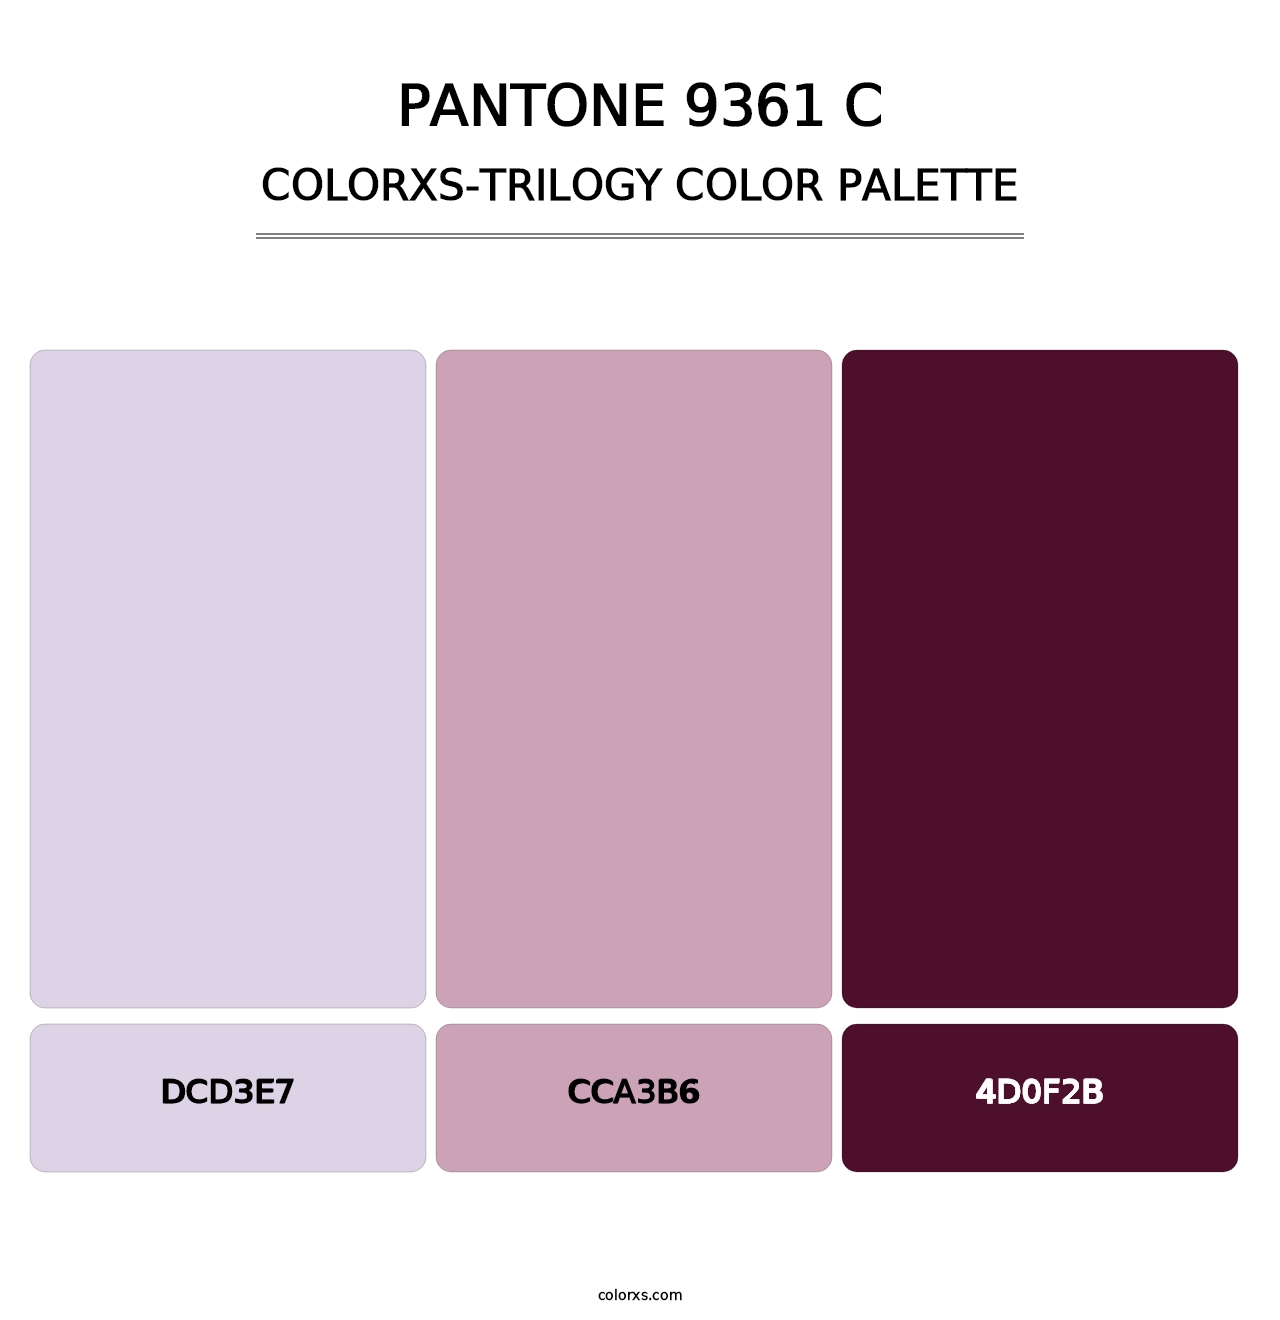 PANTONE 9361 C - Colorxs Trilogy Palette